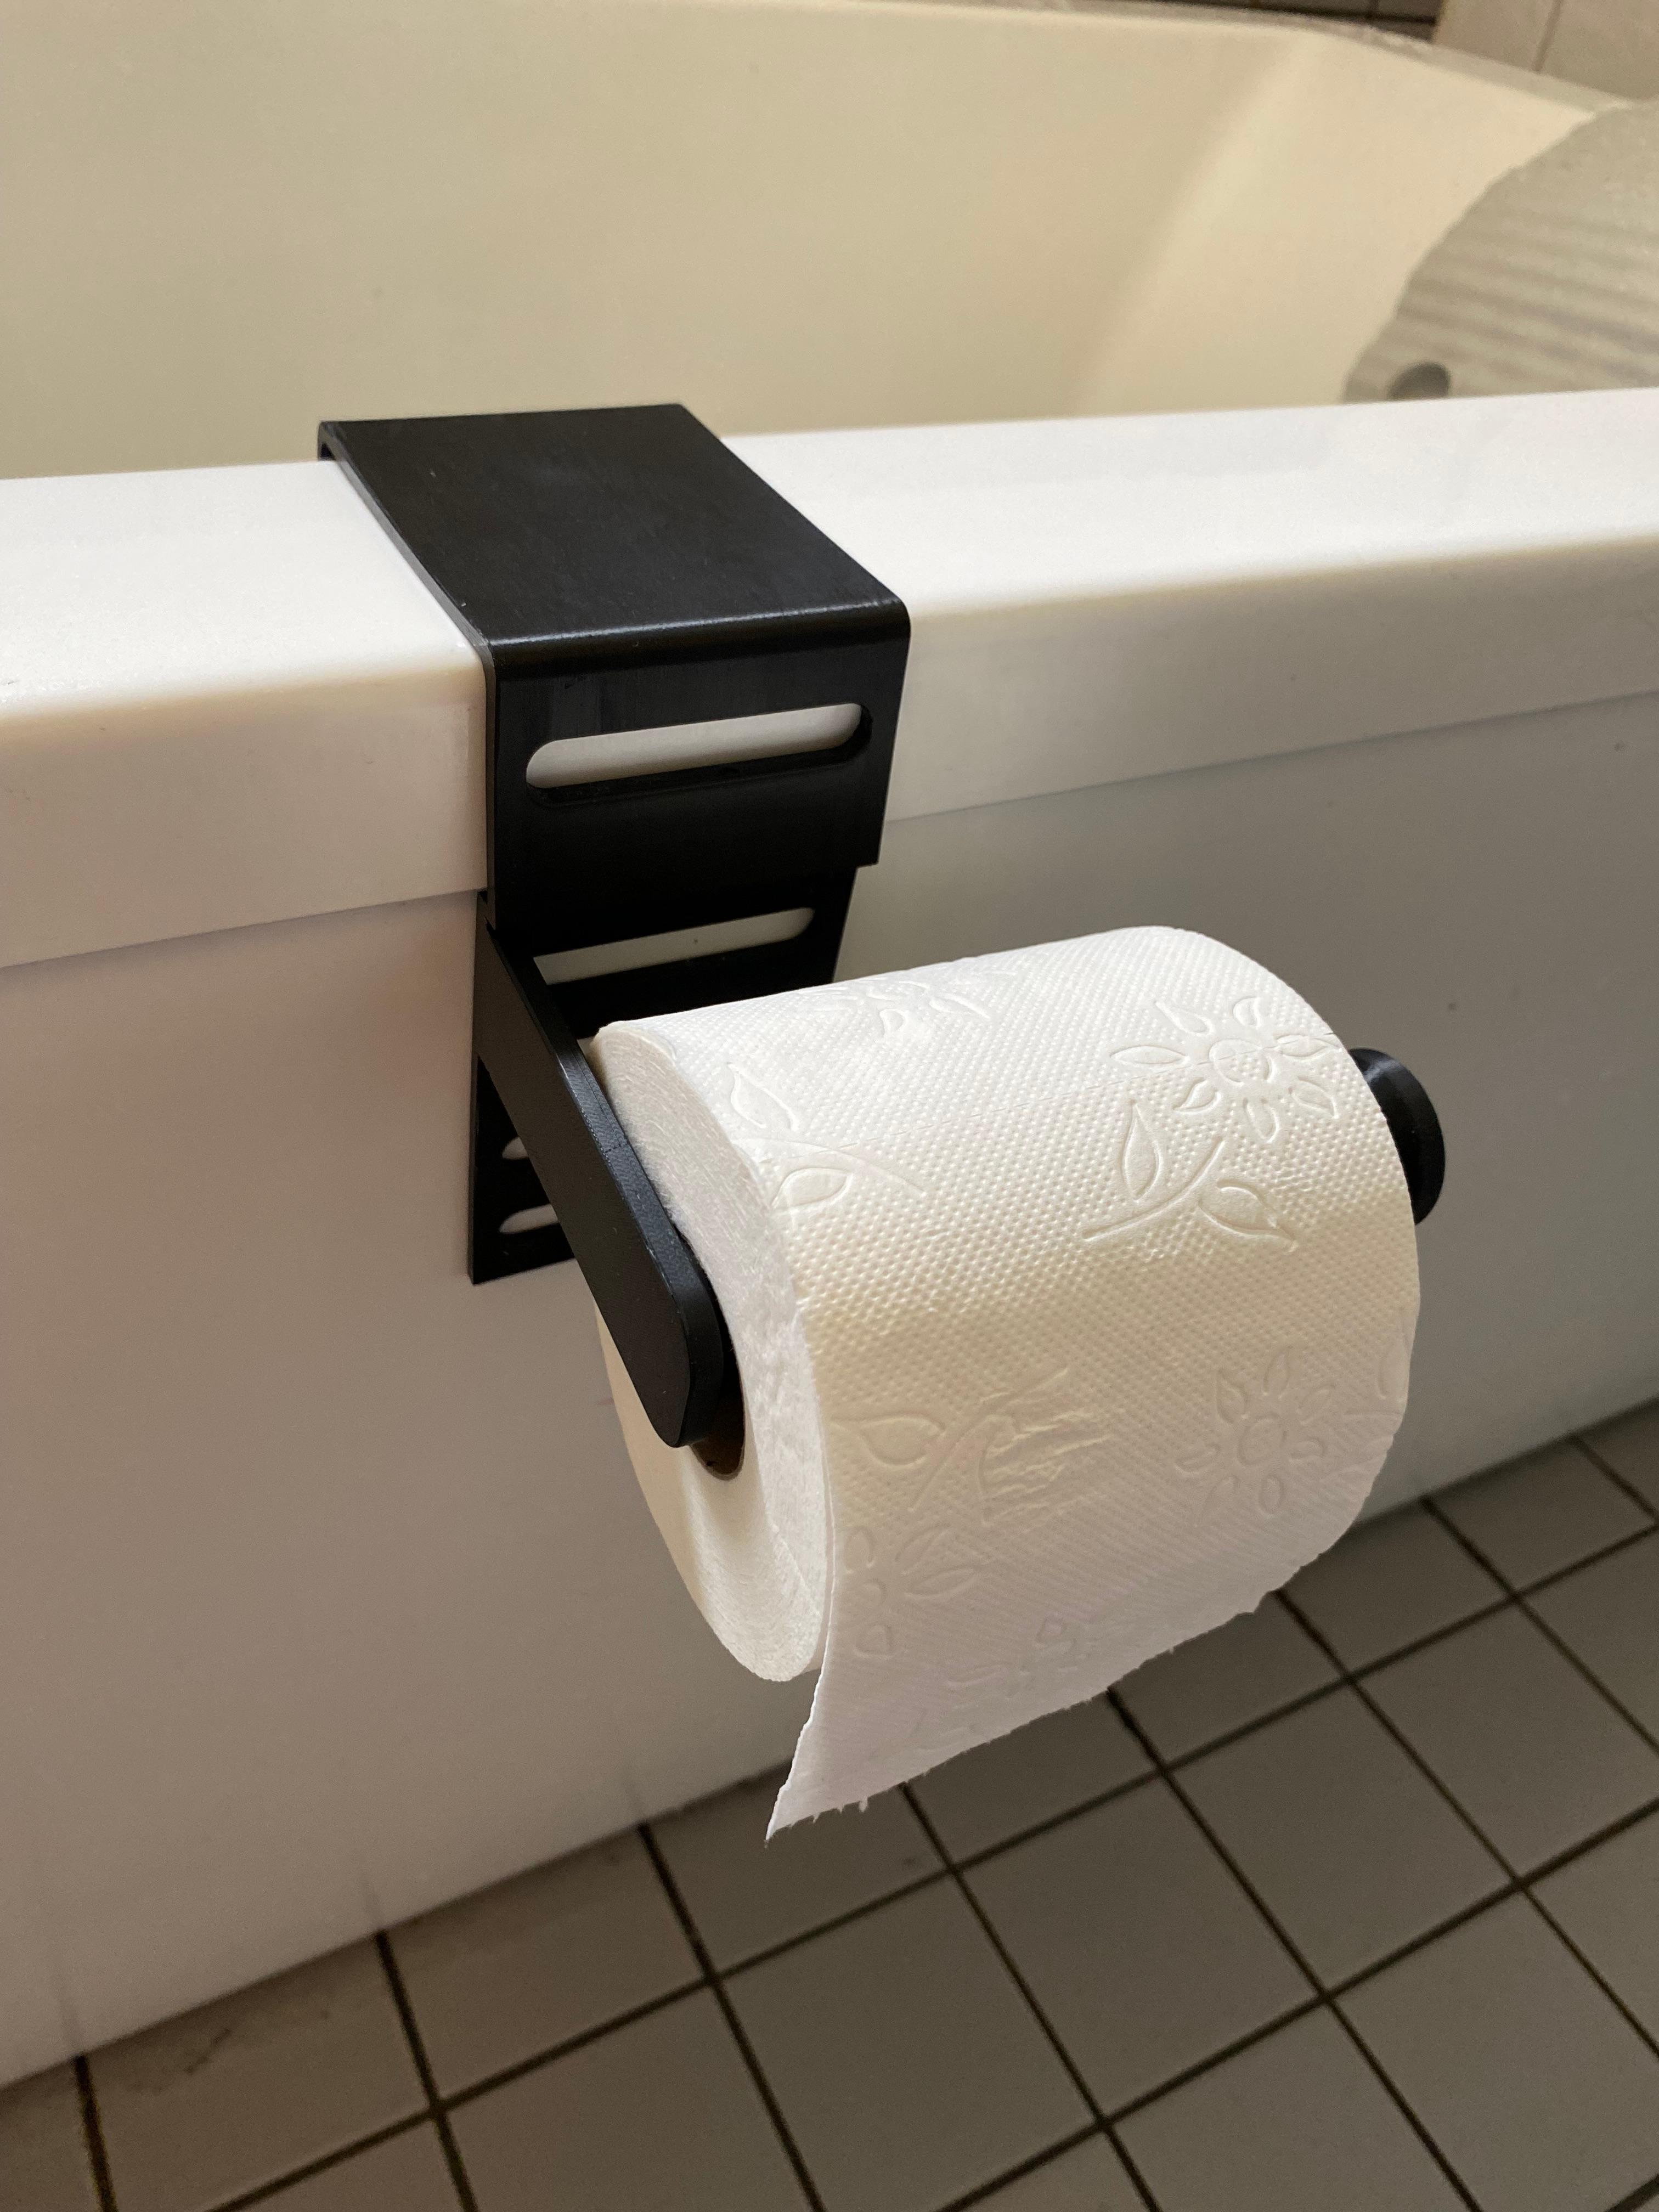 Toiletpaper holder.3mf 3d model